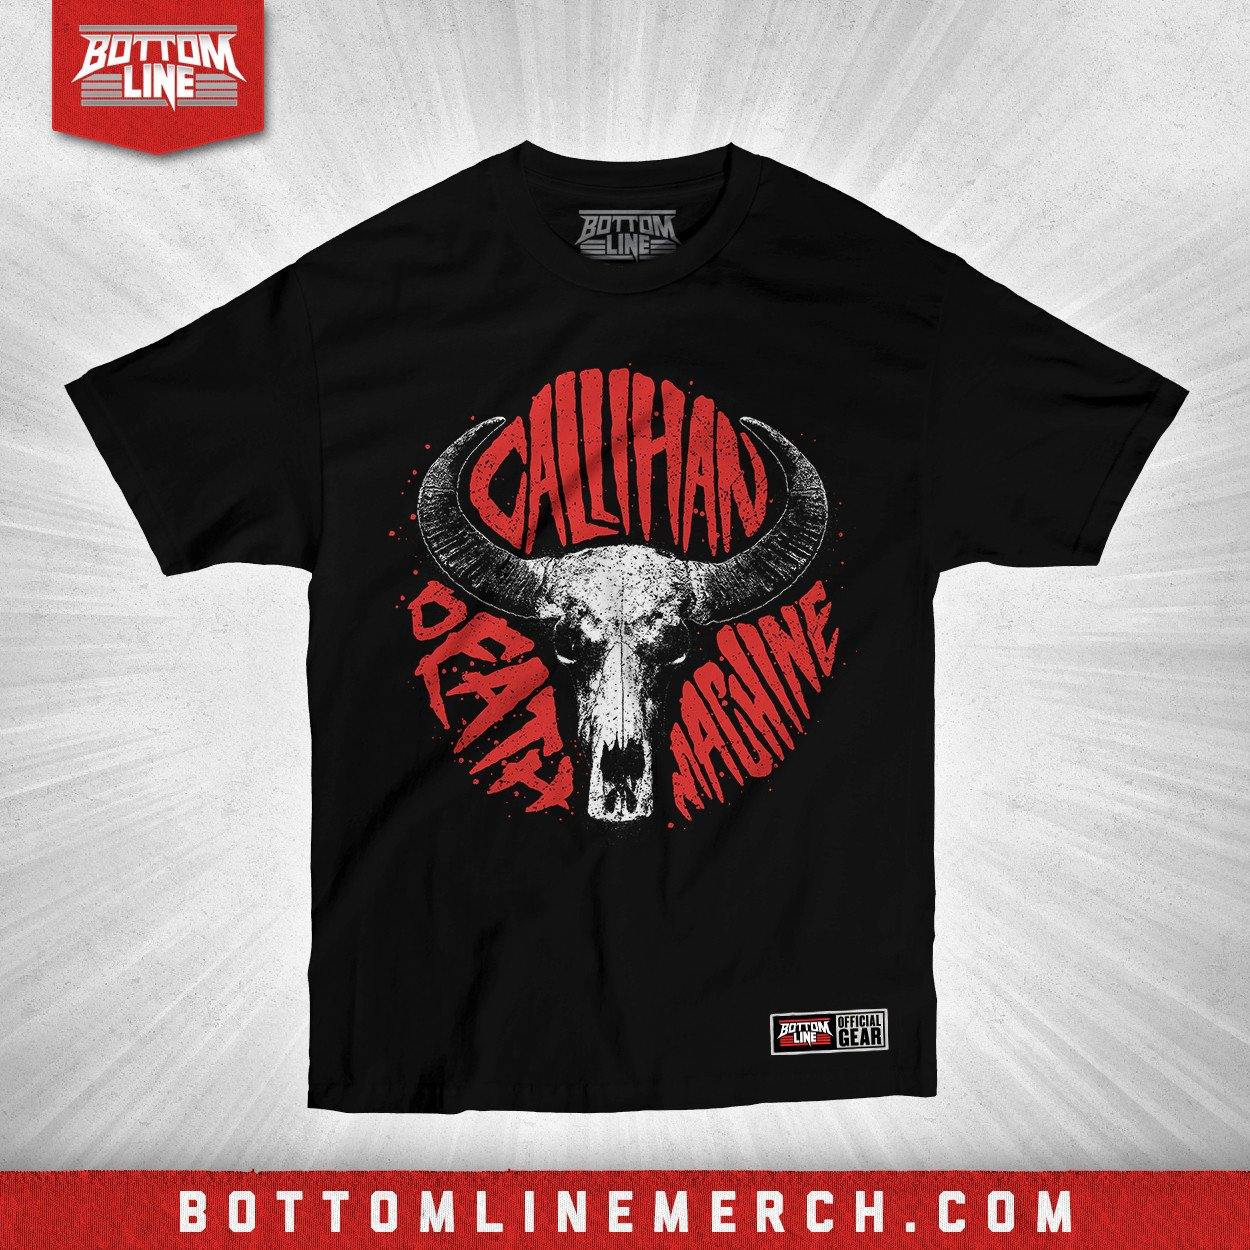 Buy Now – Sami Callihan "Buffalo Skull" Shirt – Wrestler & Wrestling Merch – Bottom Line